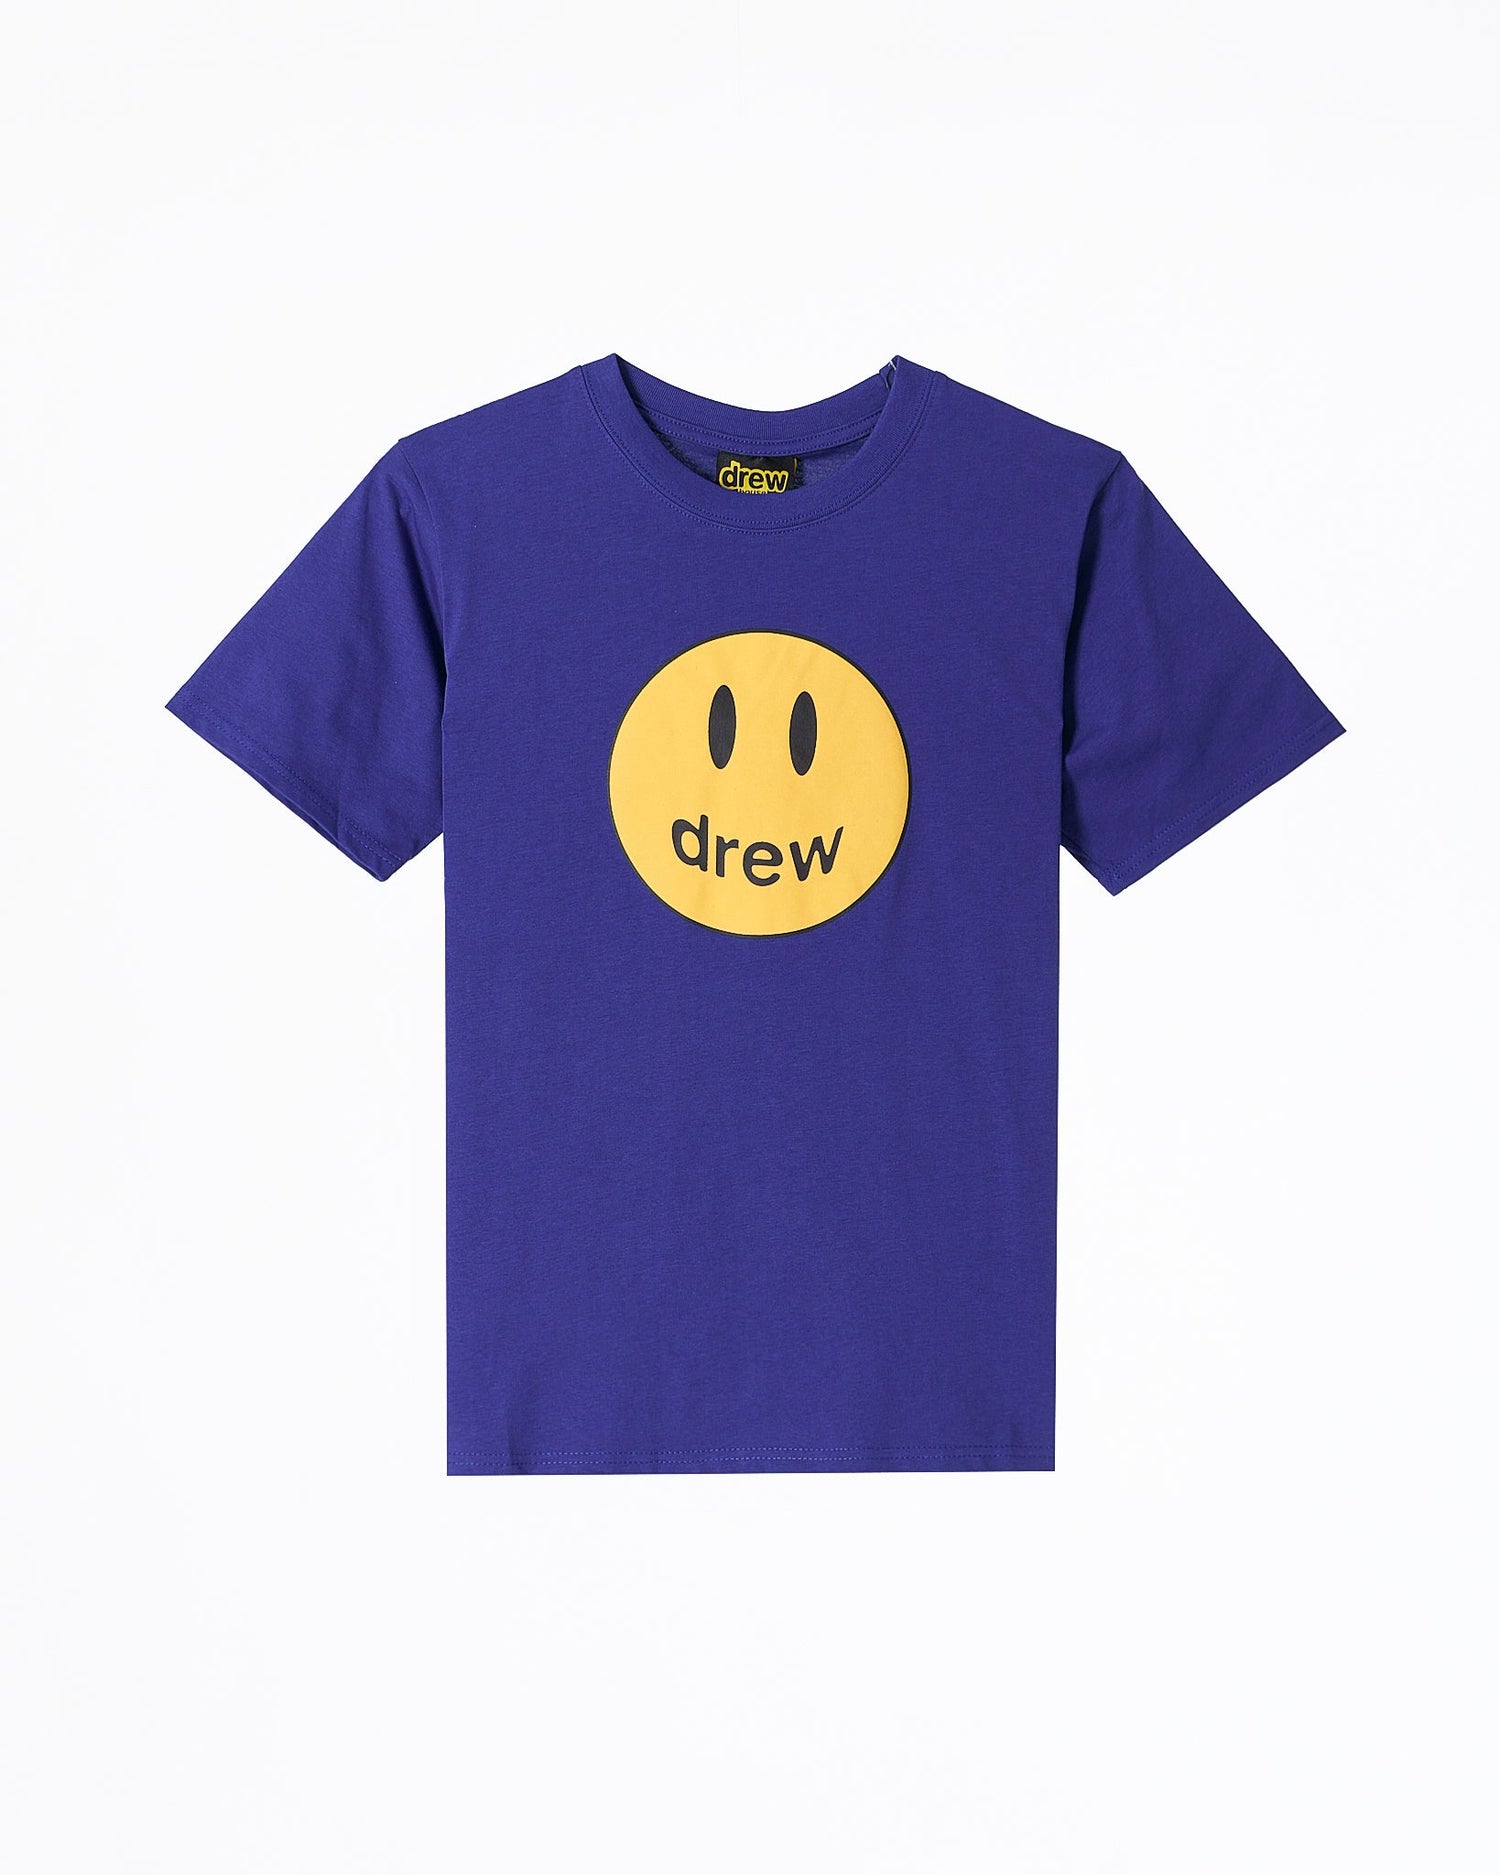 MOI OUTFIT-DRE Smiling Face Unisex Blue T-Shirt 18.90